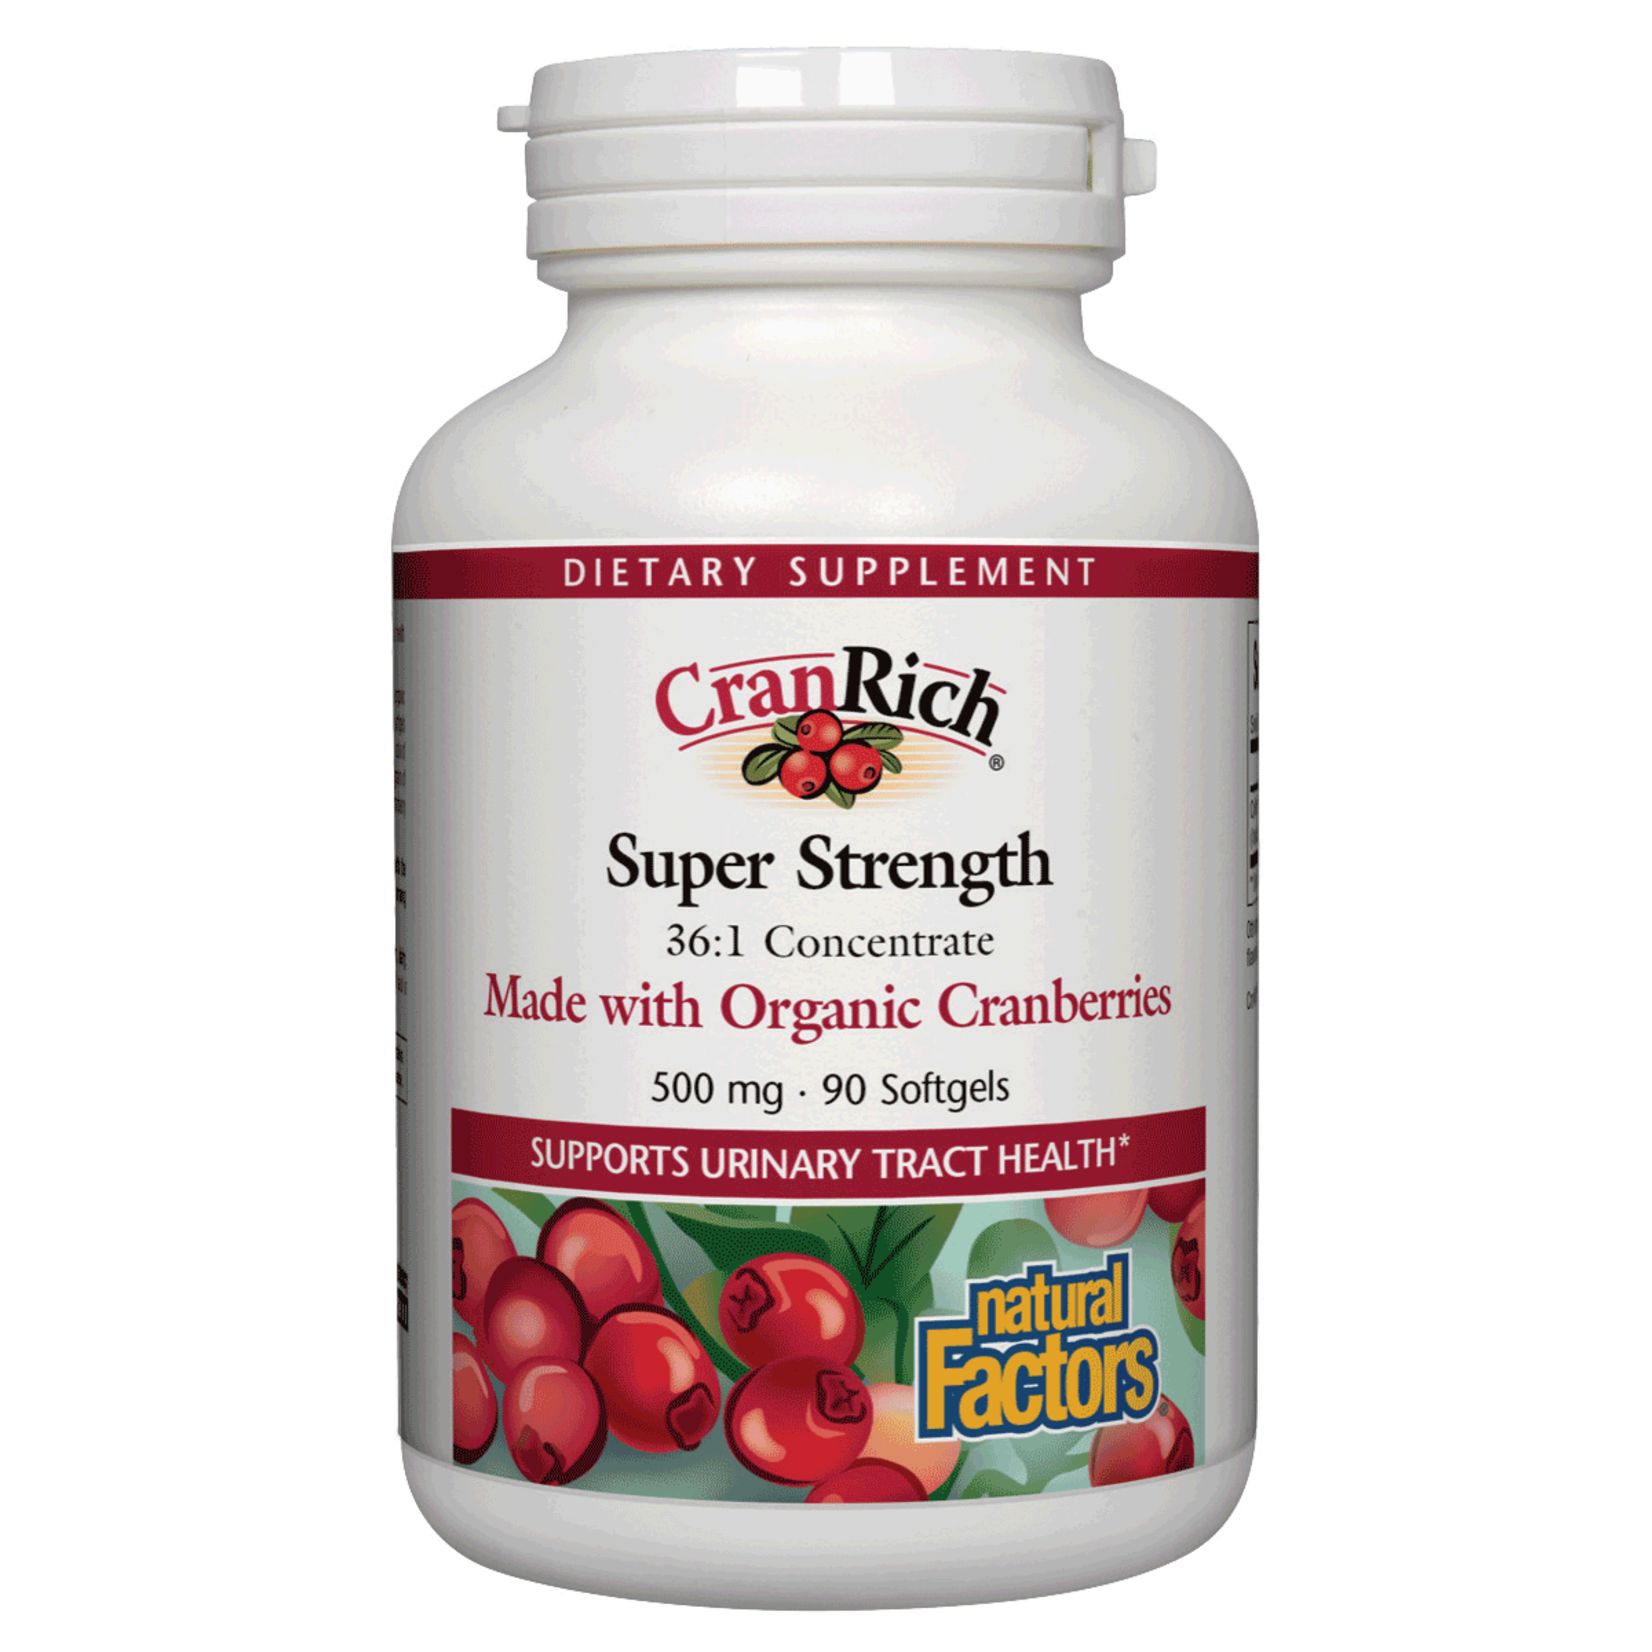 Natural Factors Natural Factors - Cranrich 500 mg Organic Cranberries - 90 Softgels